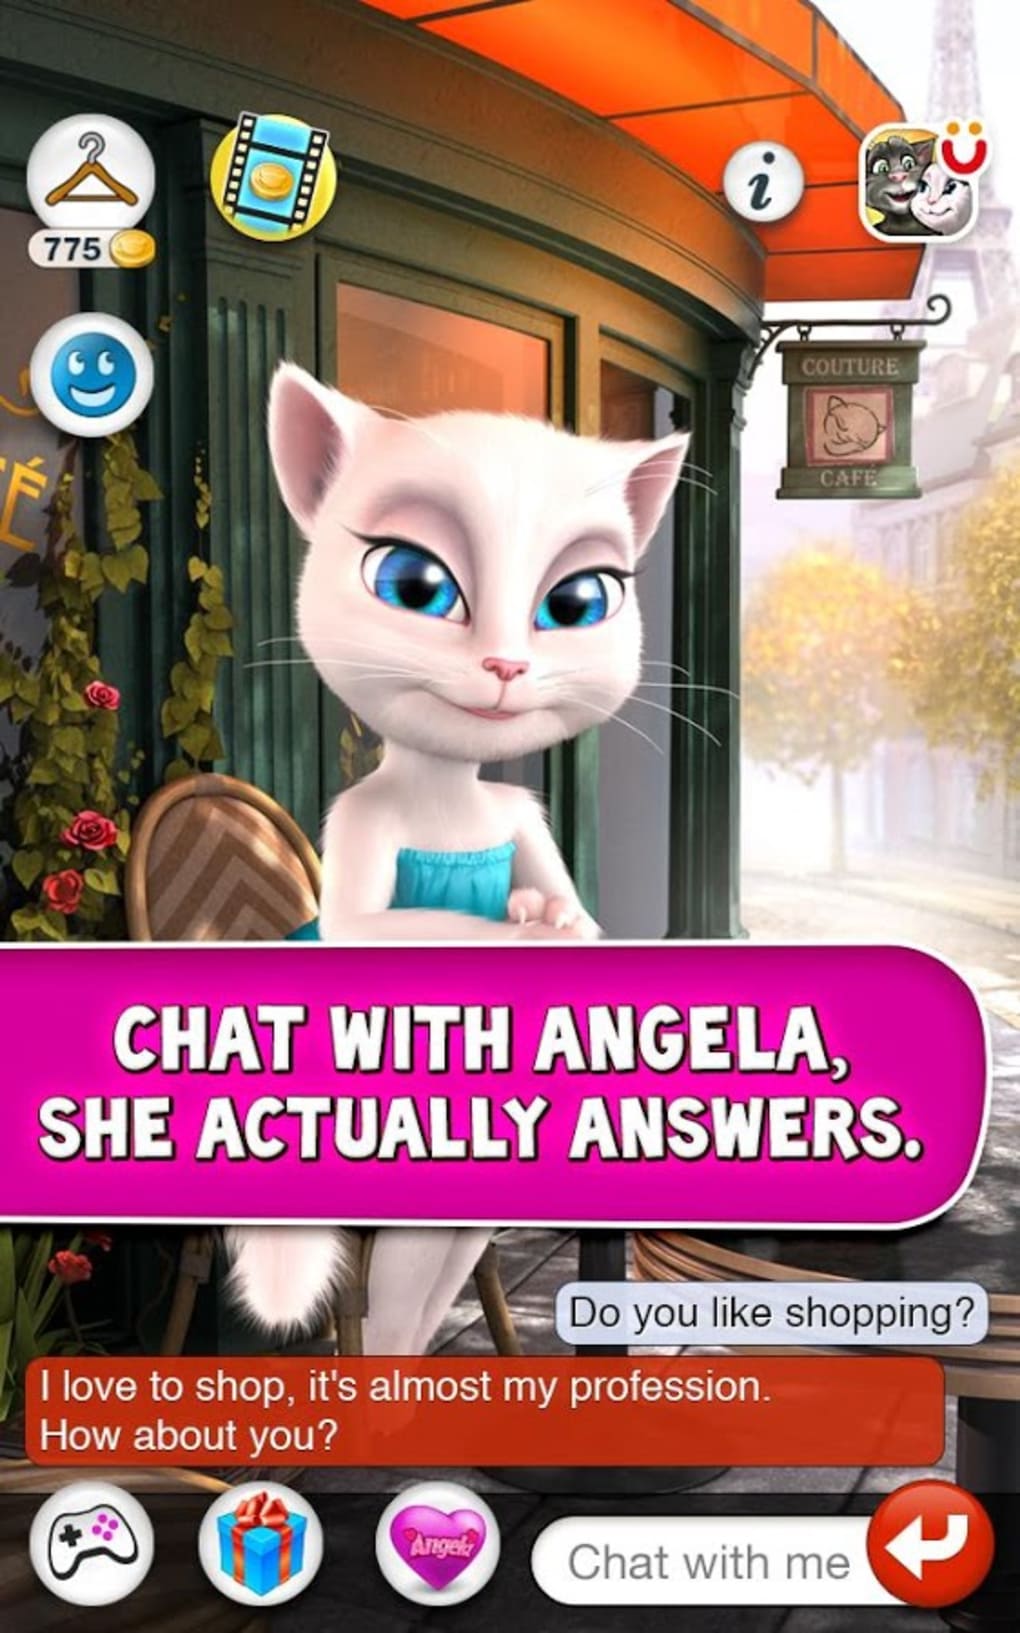 Download do APK de Princesa Jogo: Salão Angela para Android